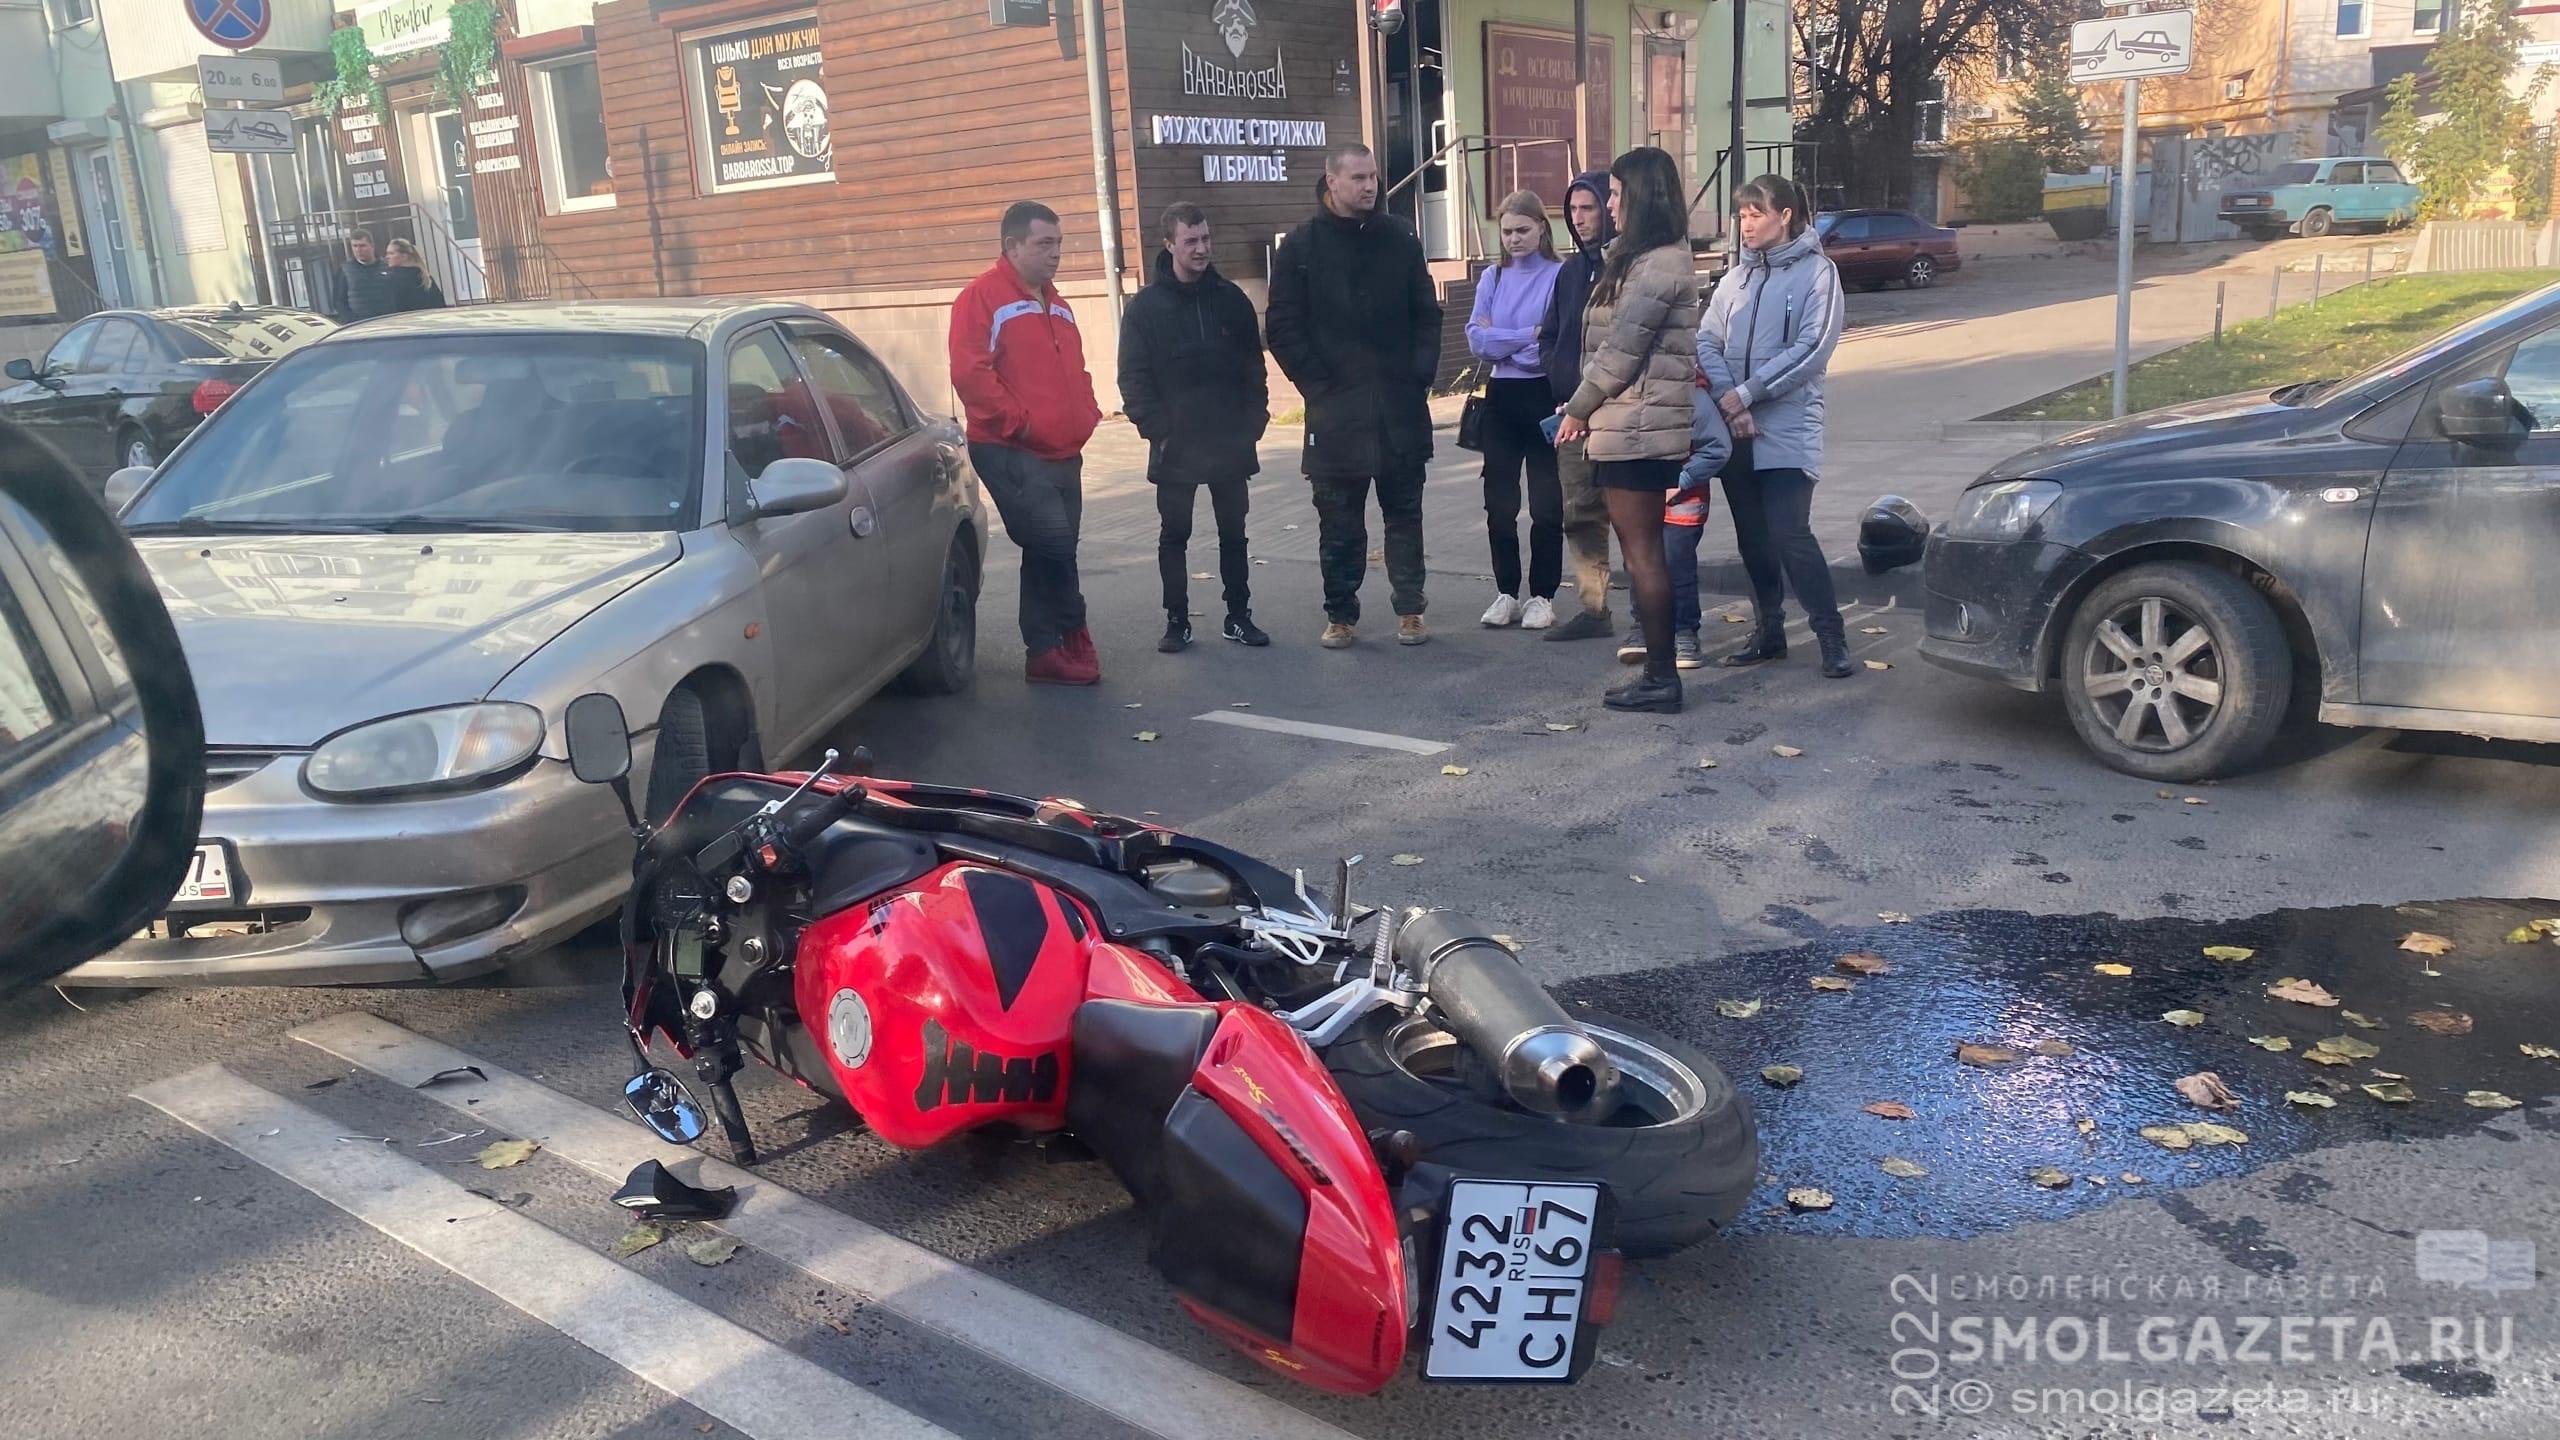 В Смоленске на улице Глинки произошло ДТП с участием автомобиля KIA и мотоцикла Honda